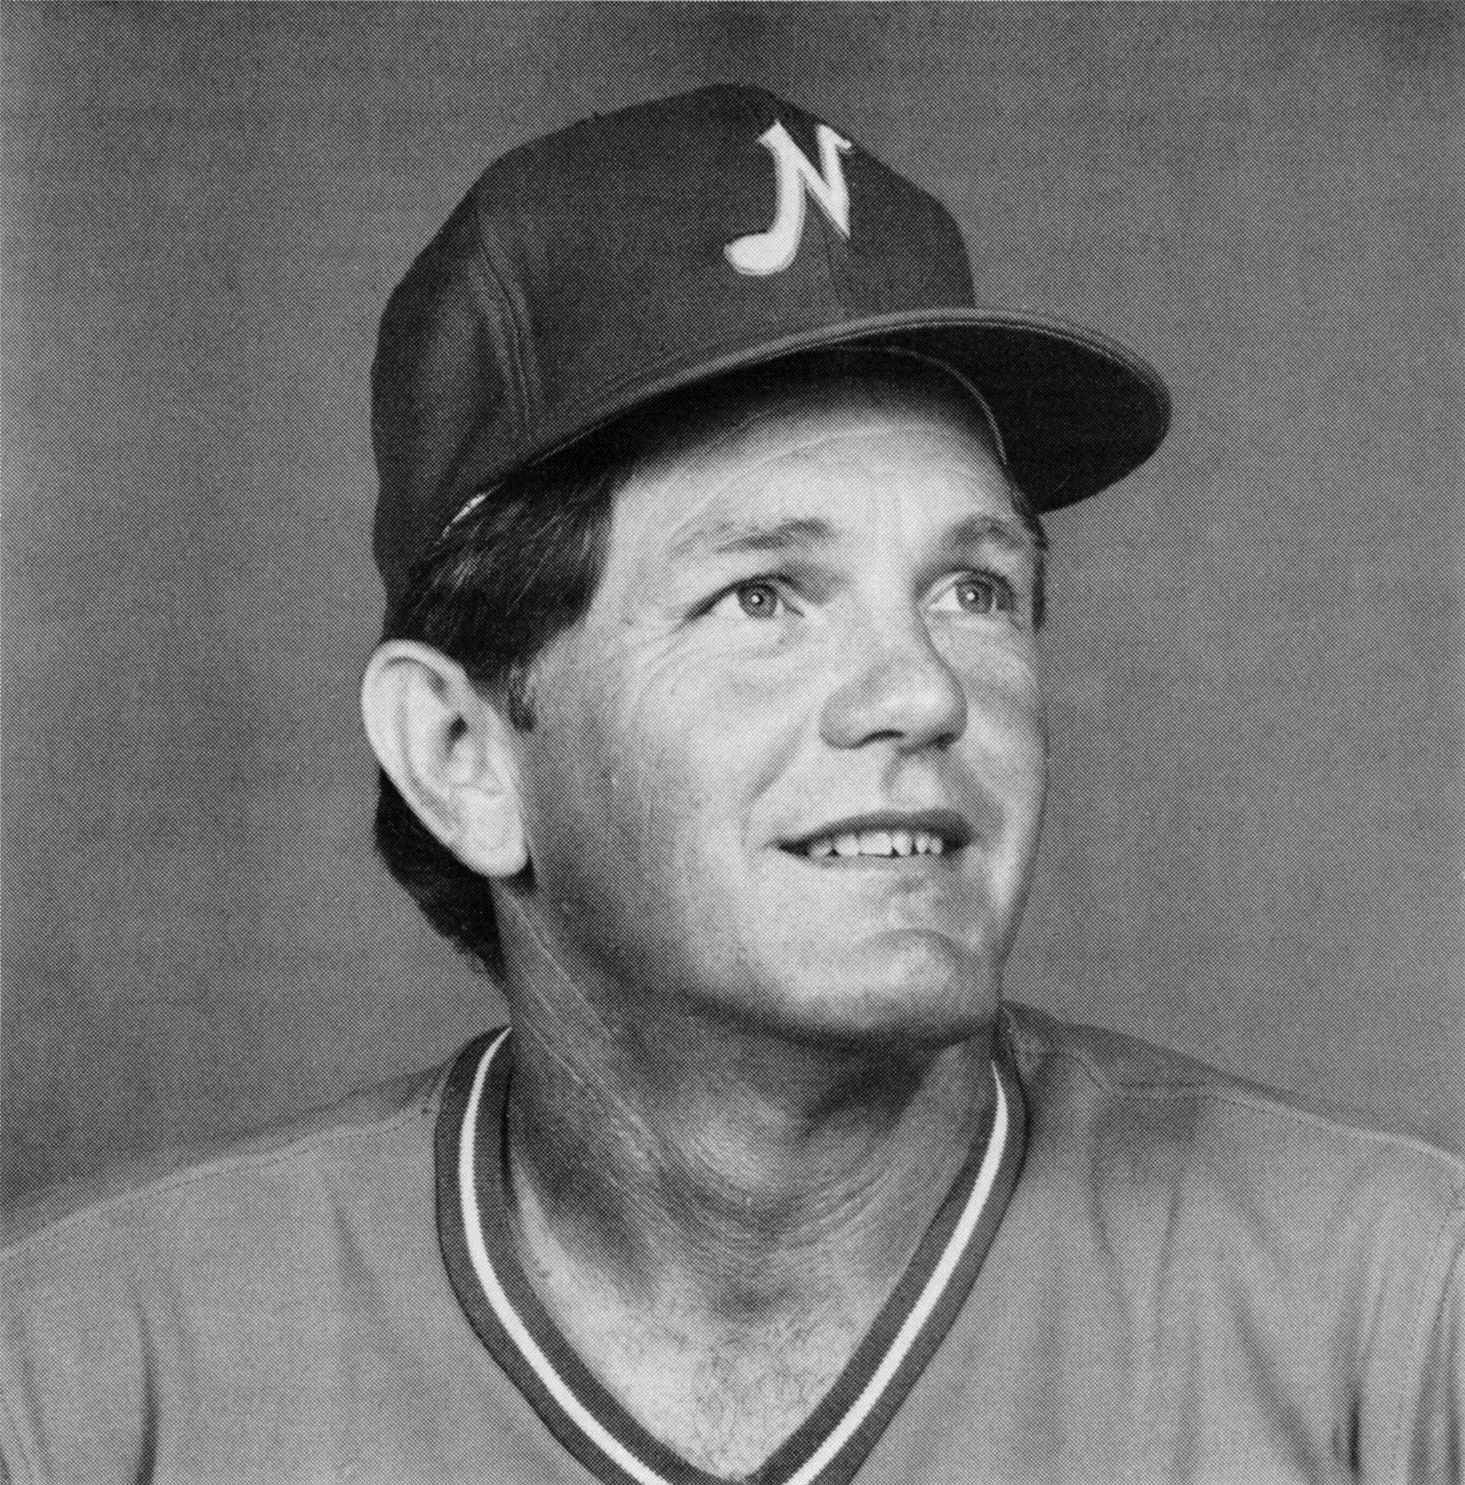 Atlanta Braves Photo (1974) - Johnny Oates wearing the Atlanta